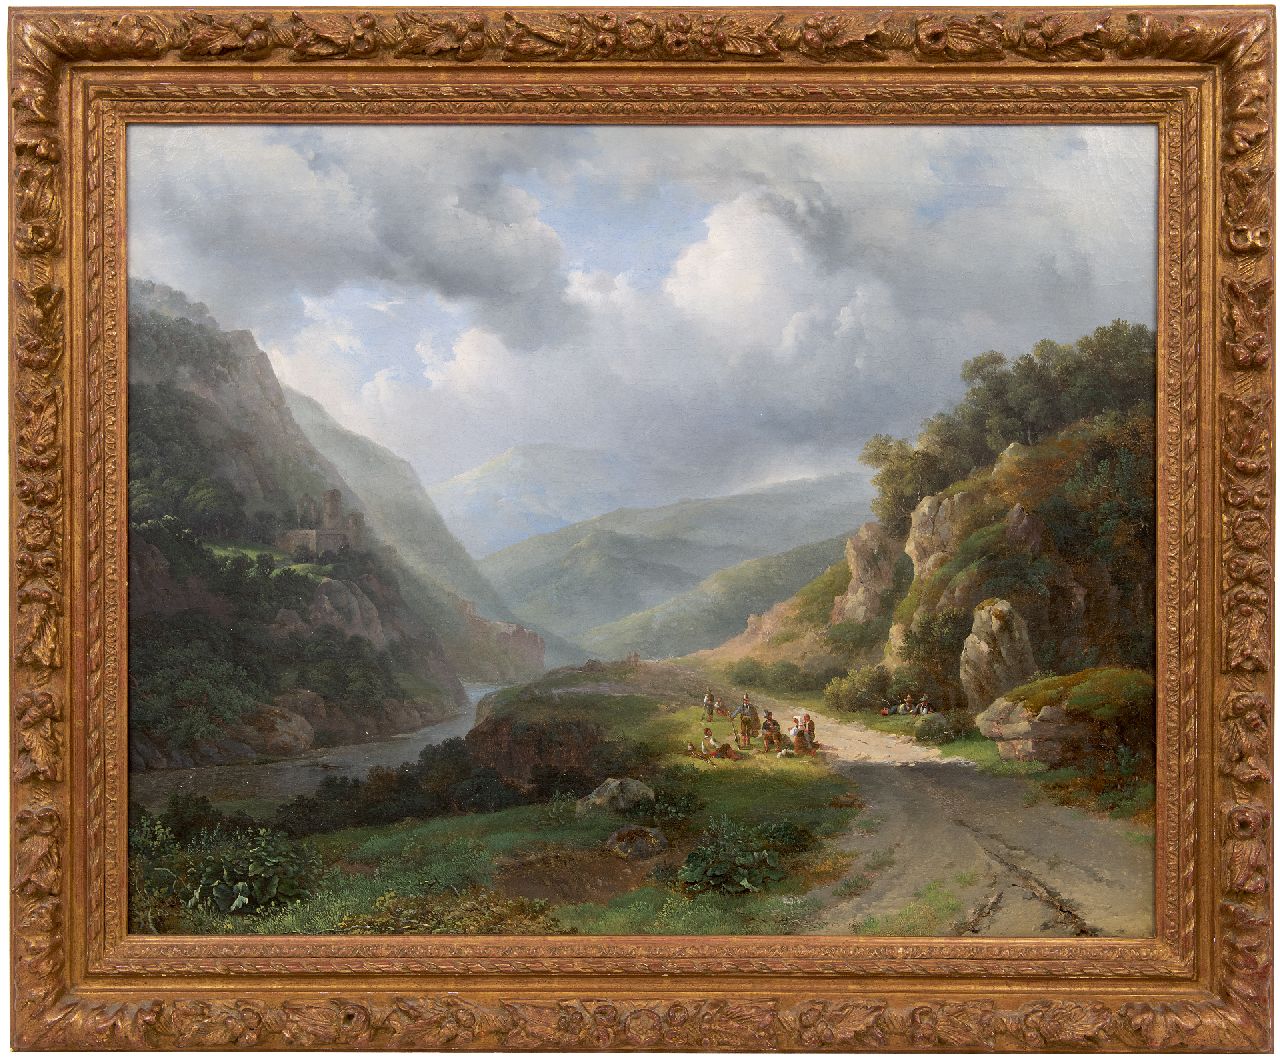 Meijer J.H.L.  | Johan Hendrik 'Louis' Meijer | Schilderijen te koop aangeboden | Berglandschap met figuren, olieverf op doek 67,4 x 84,7 cm, gesigneerd links van het midden